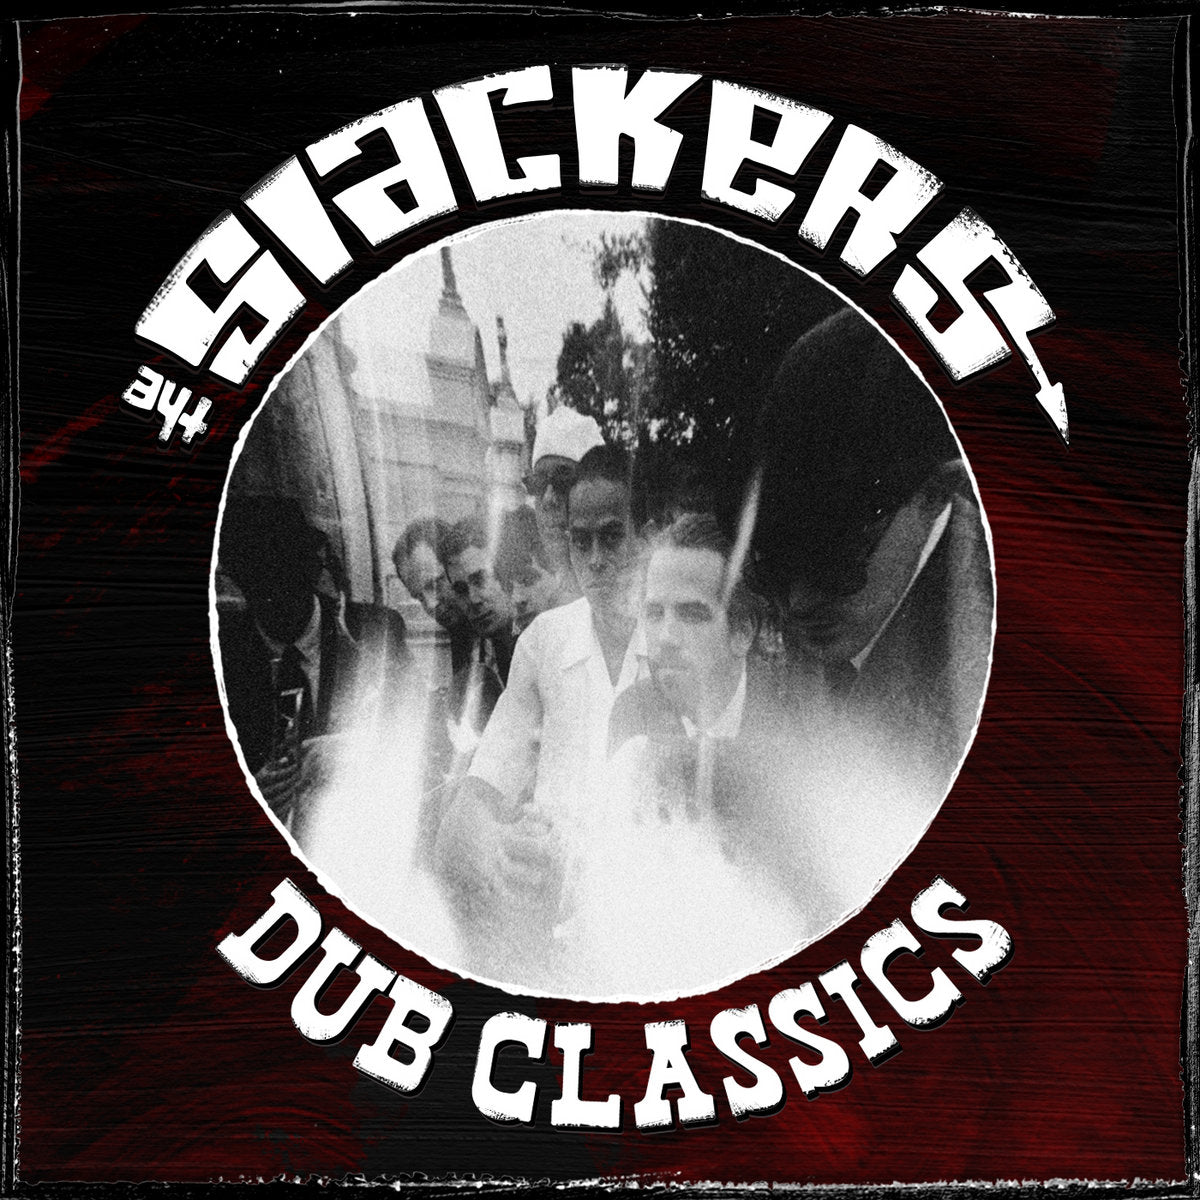 The Slackers - Dub Classics Black Vinyl LP